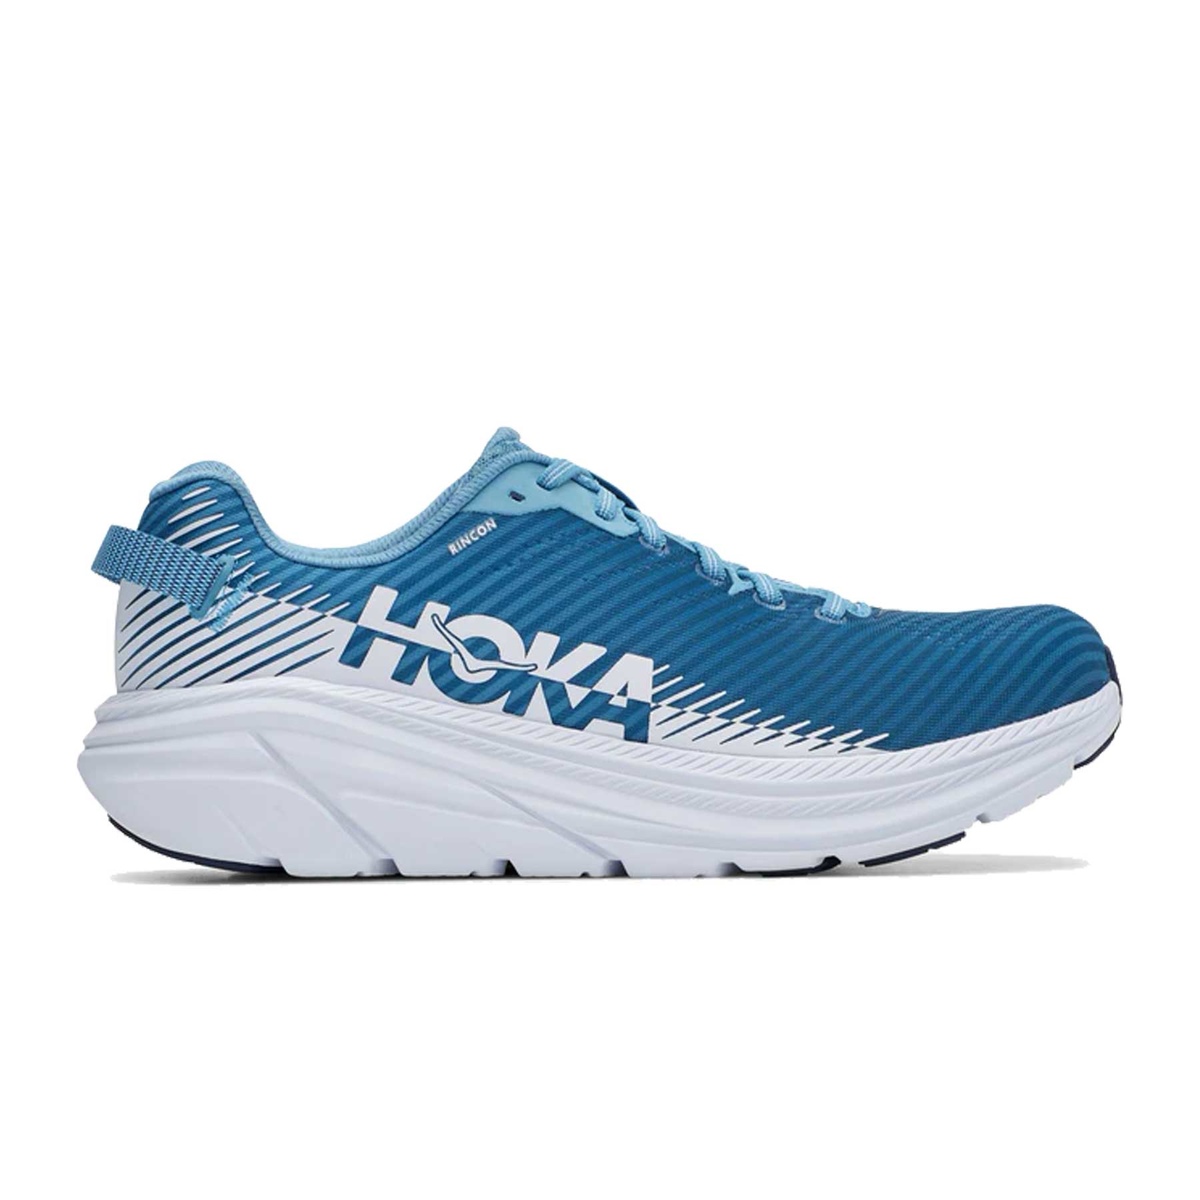 Outlet di scarpe da running Maxi Sport Hoka One One economiche - Offerte  per acquistare online | Runnea